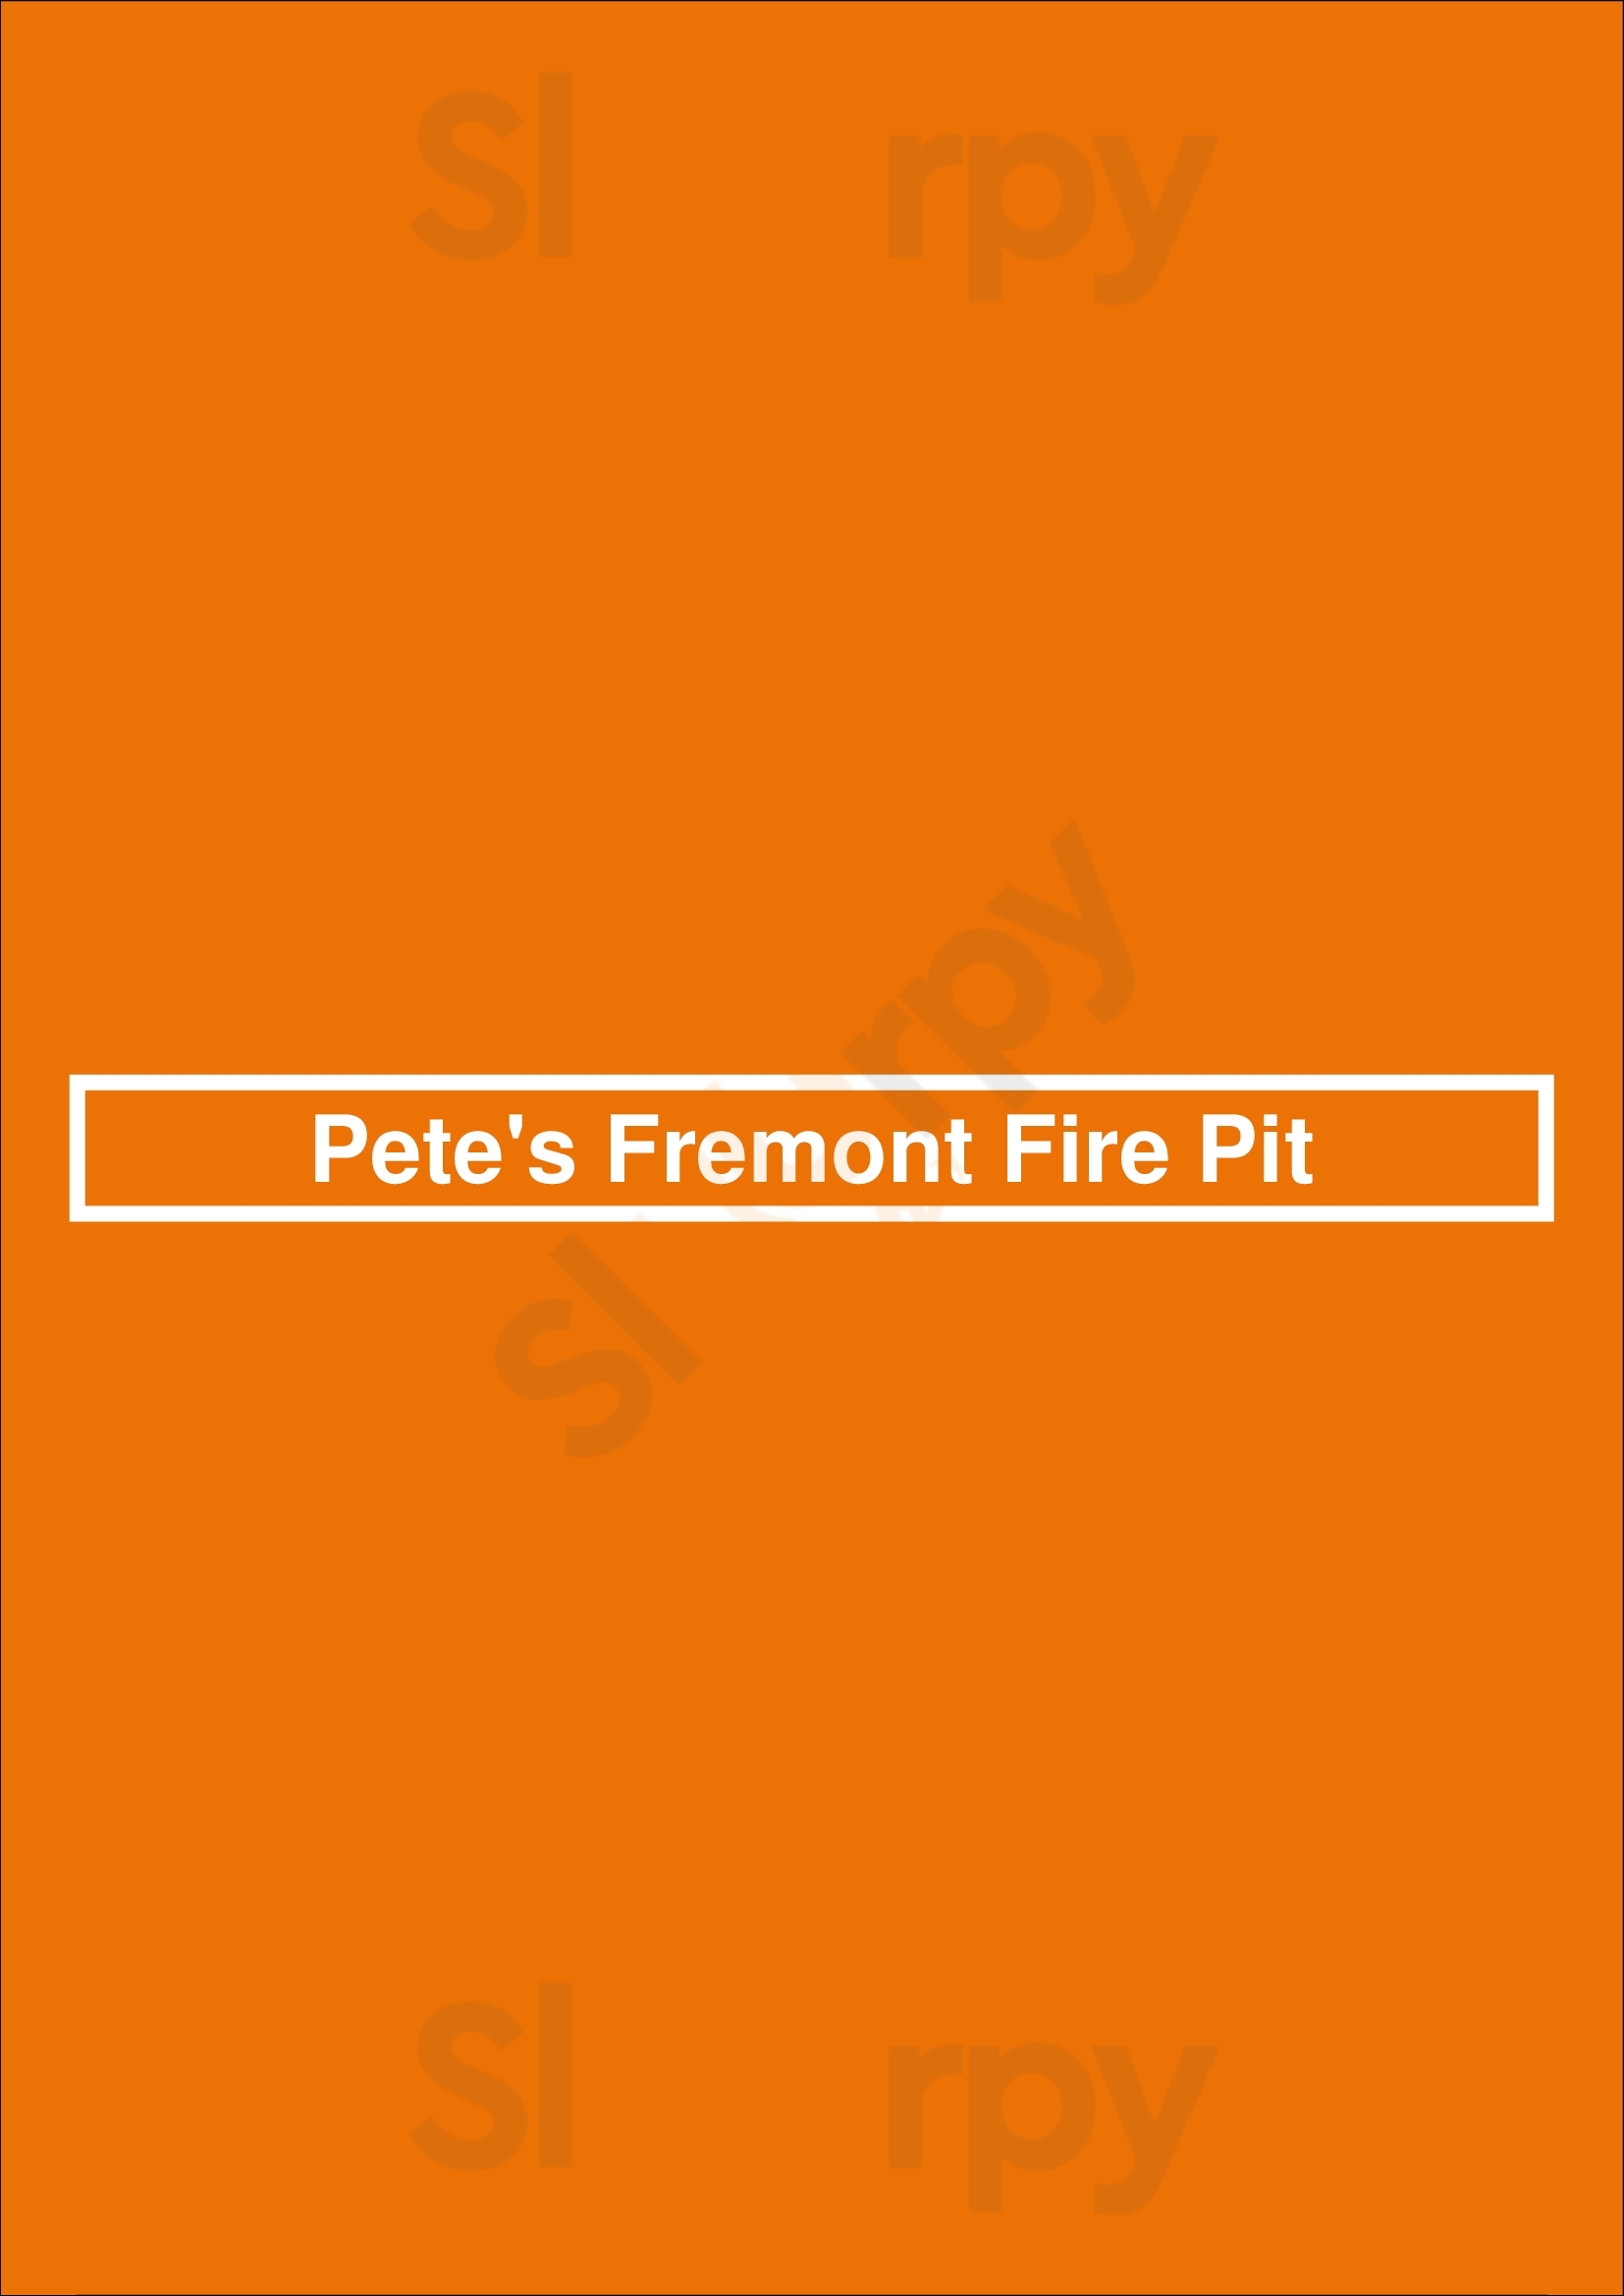 Pete's Fremont Fire Pit Seattle Menu - 1